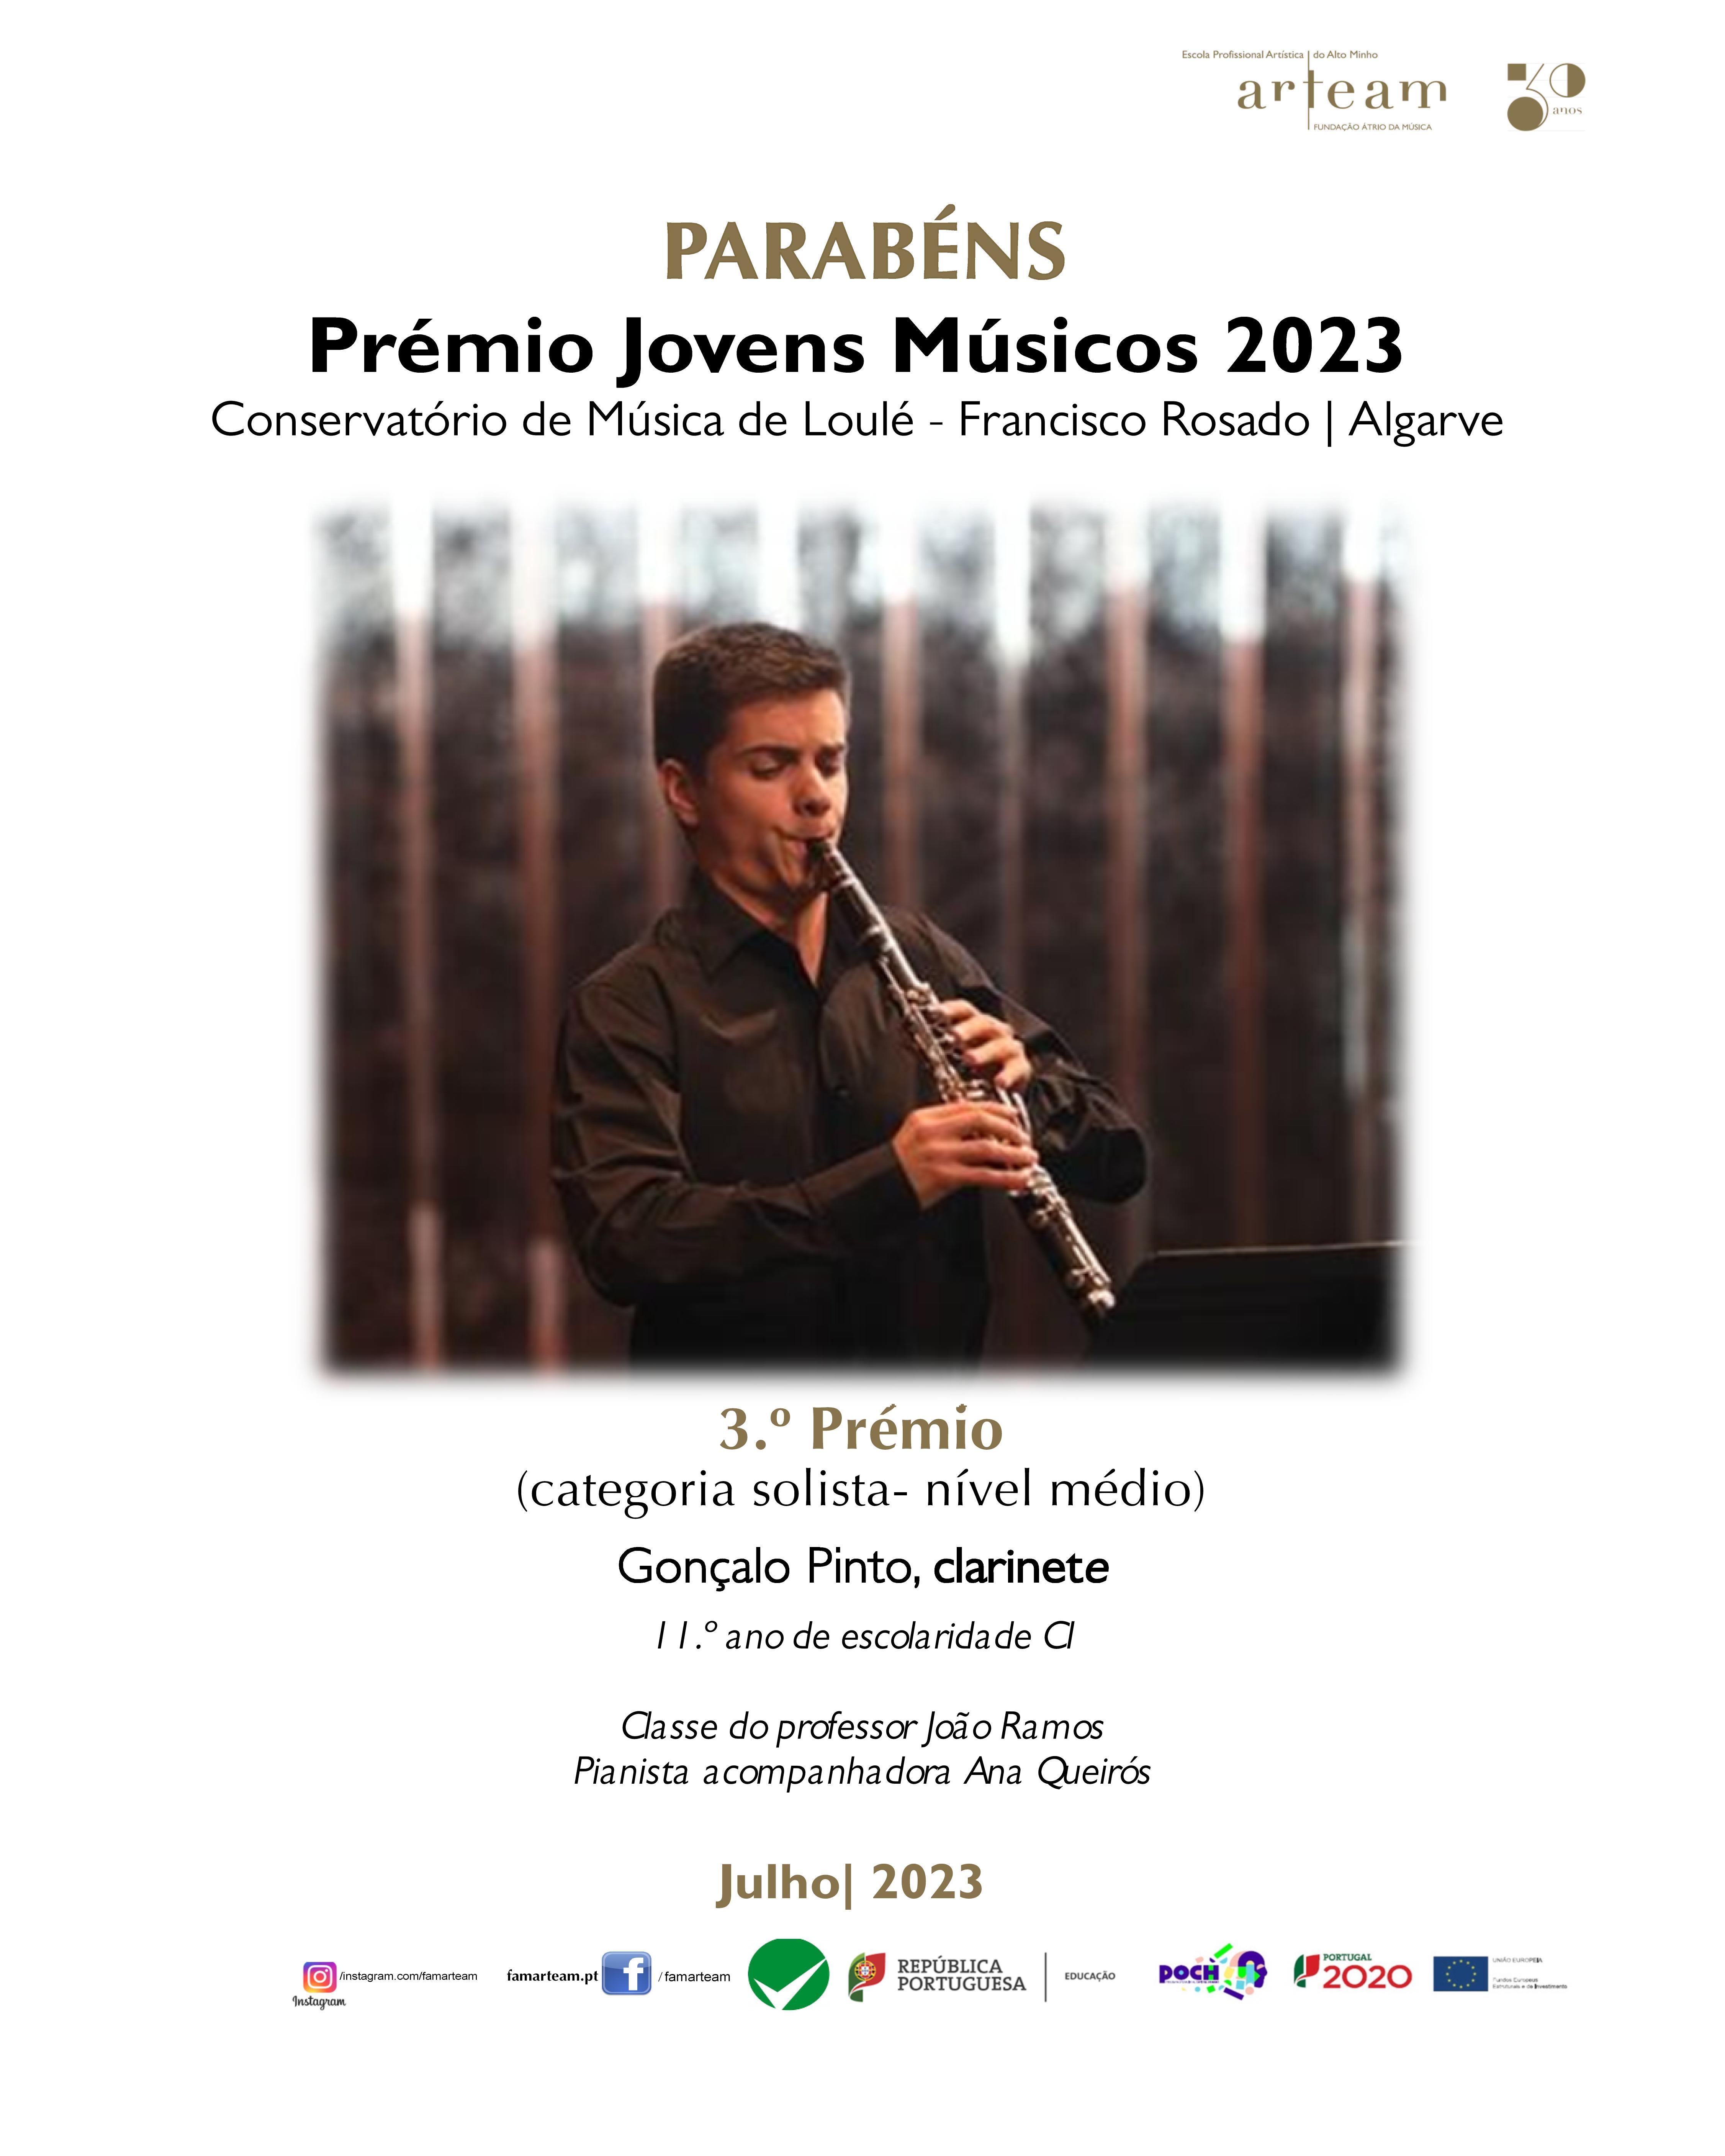 Gonçalo Pinto recebe Prémio Jovens Músicos 2023